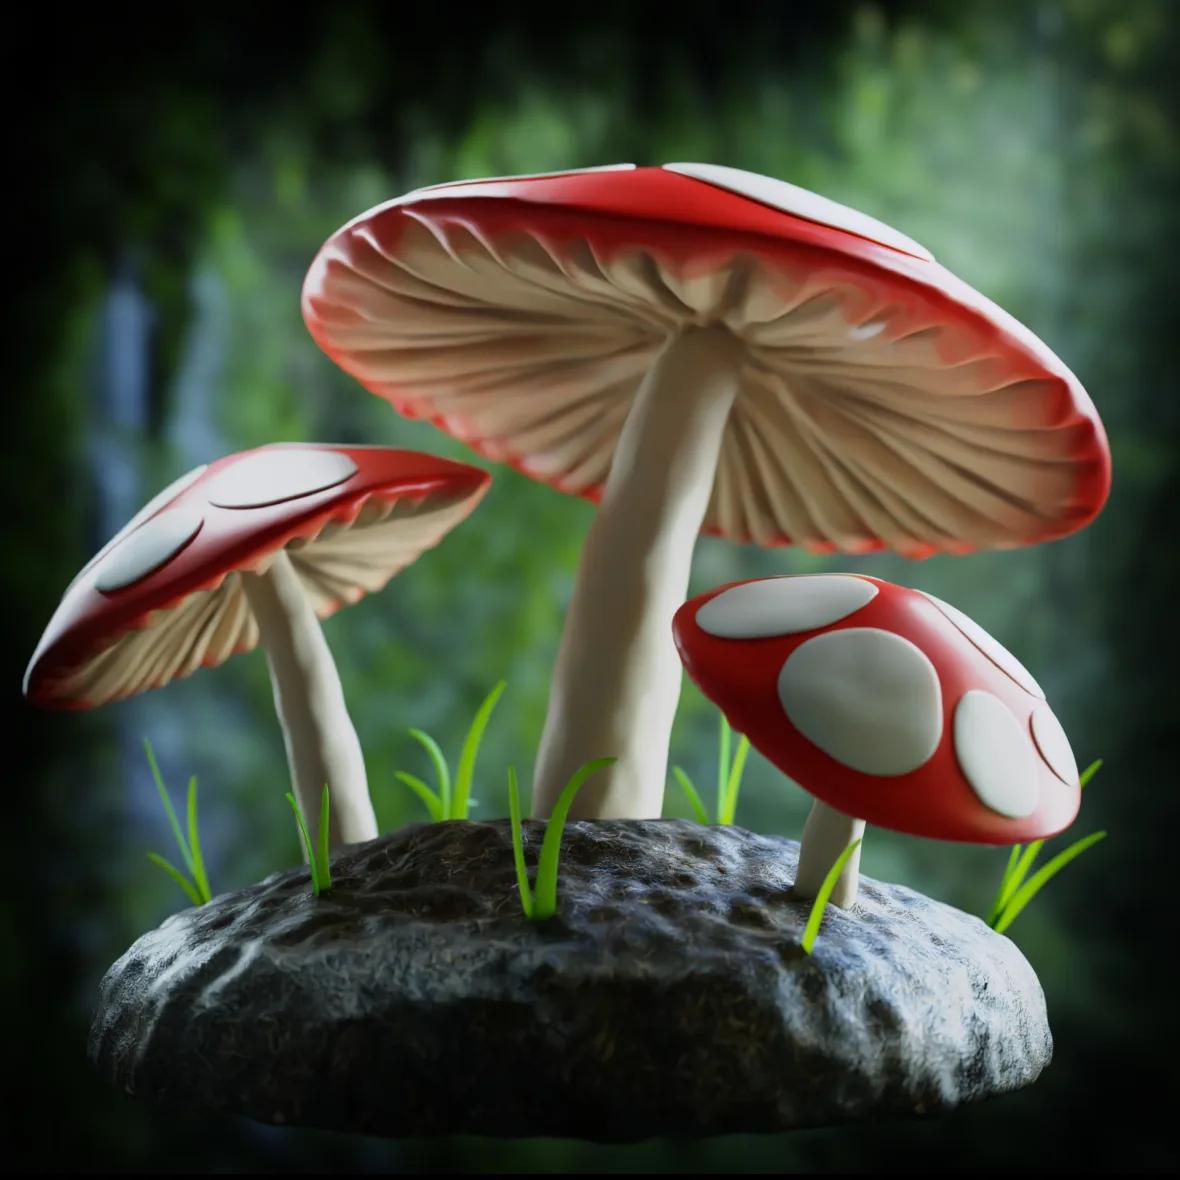 Mushroom Forest Scene (Blender Tutorial)